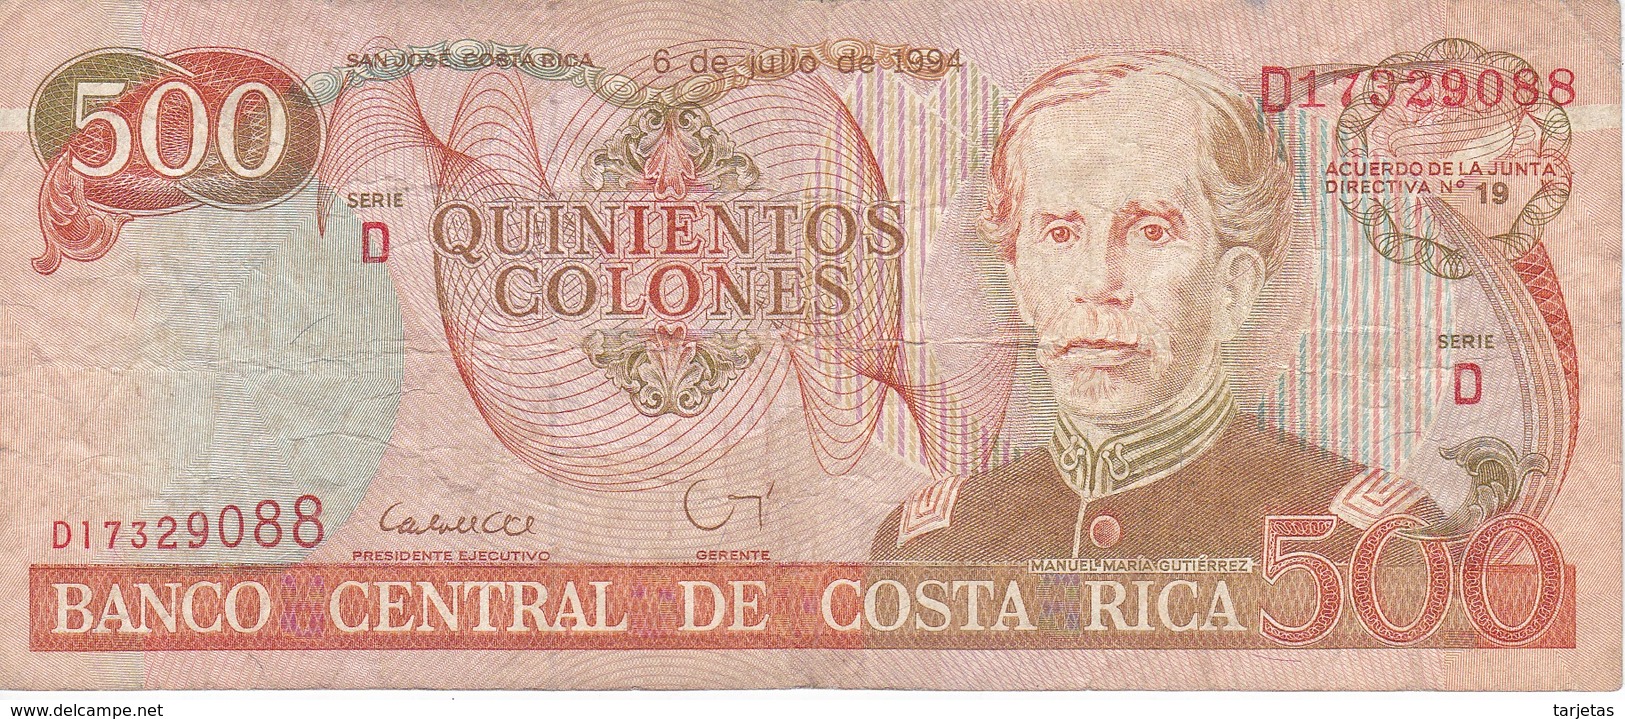 BILLETE DE COSTA RICA DE 500 COLONES AÑO 1994 SERIE D  (BANKNOTE) - Costa Rica